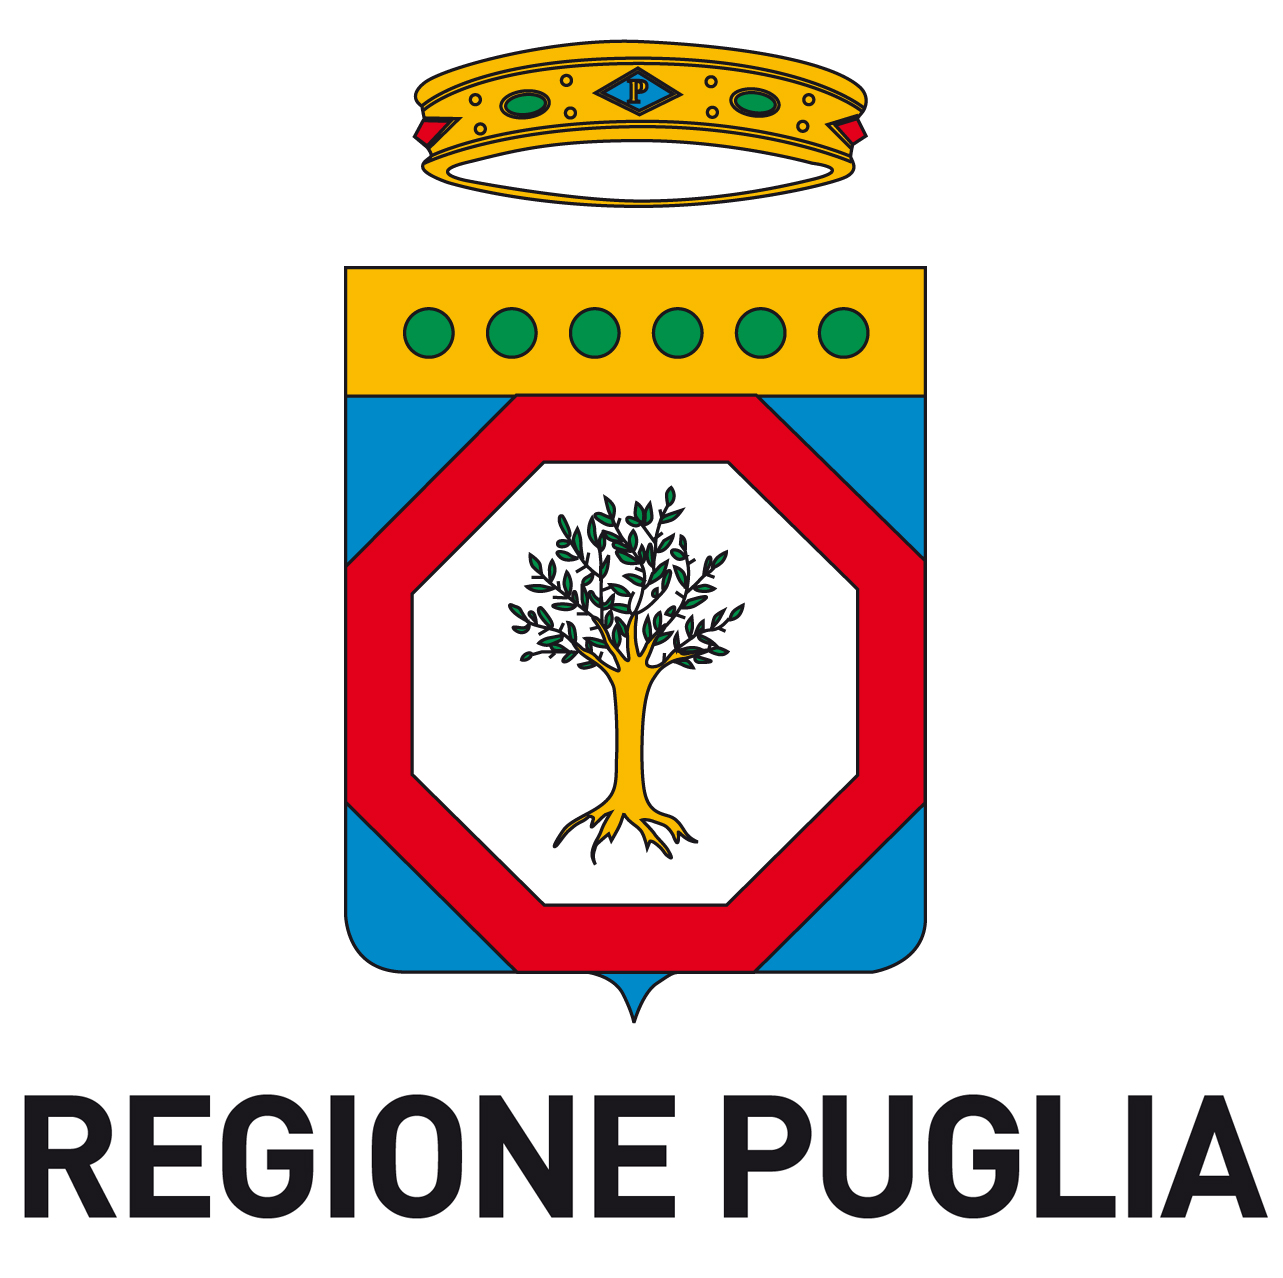 LOGO REGIONE PUGLIA 15X11 300DPI